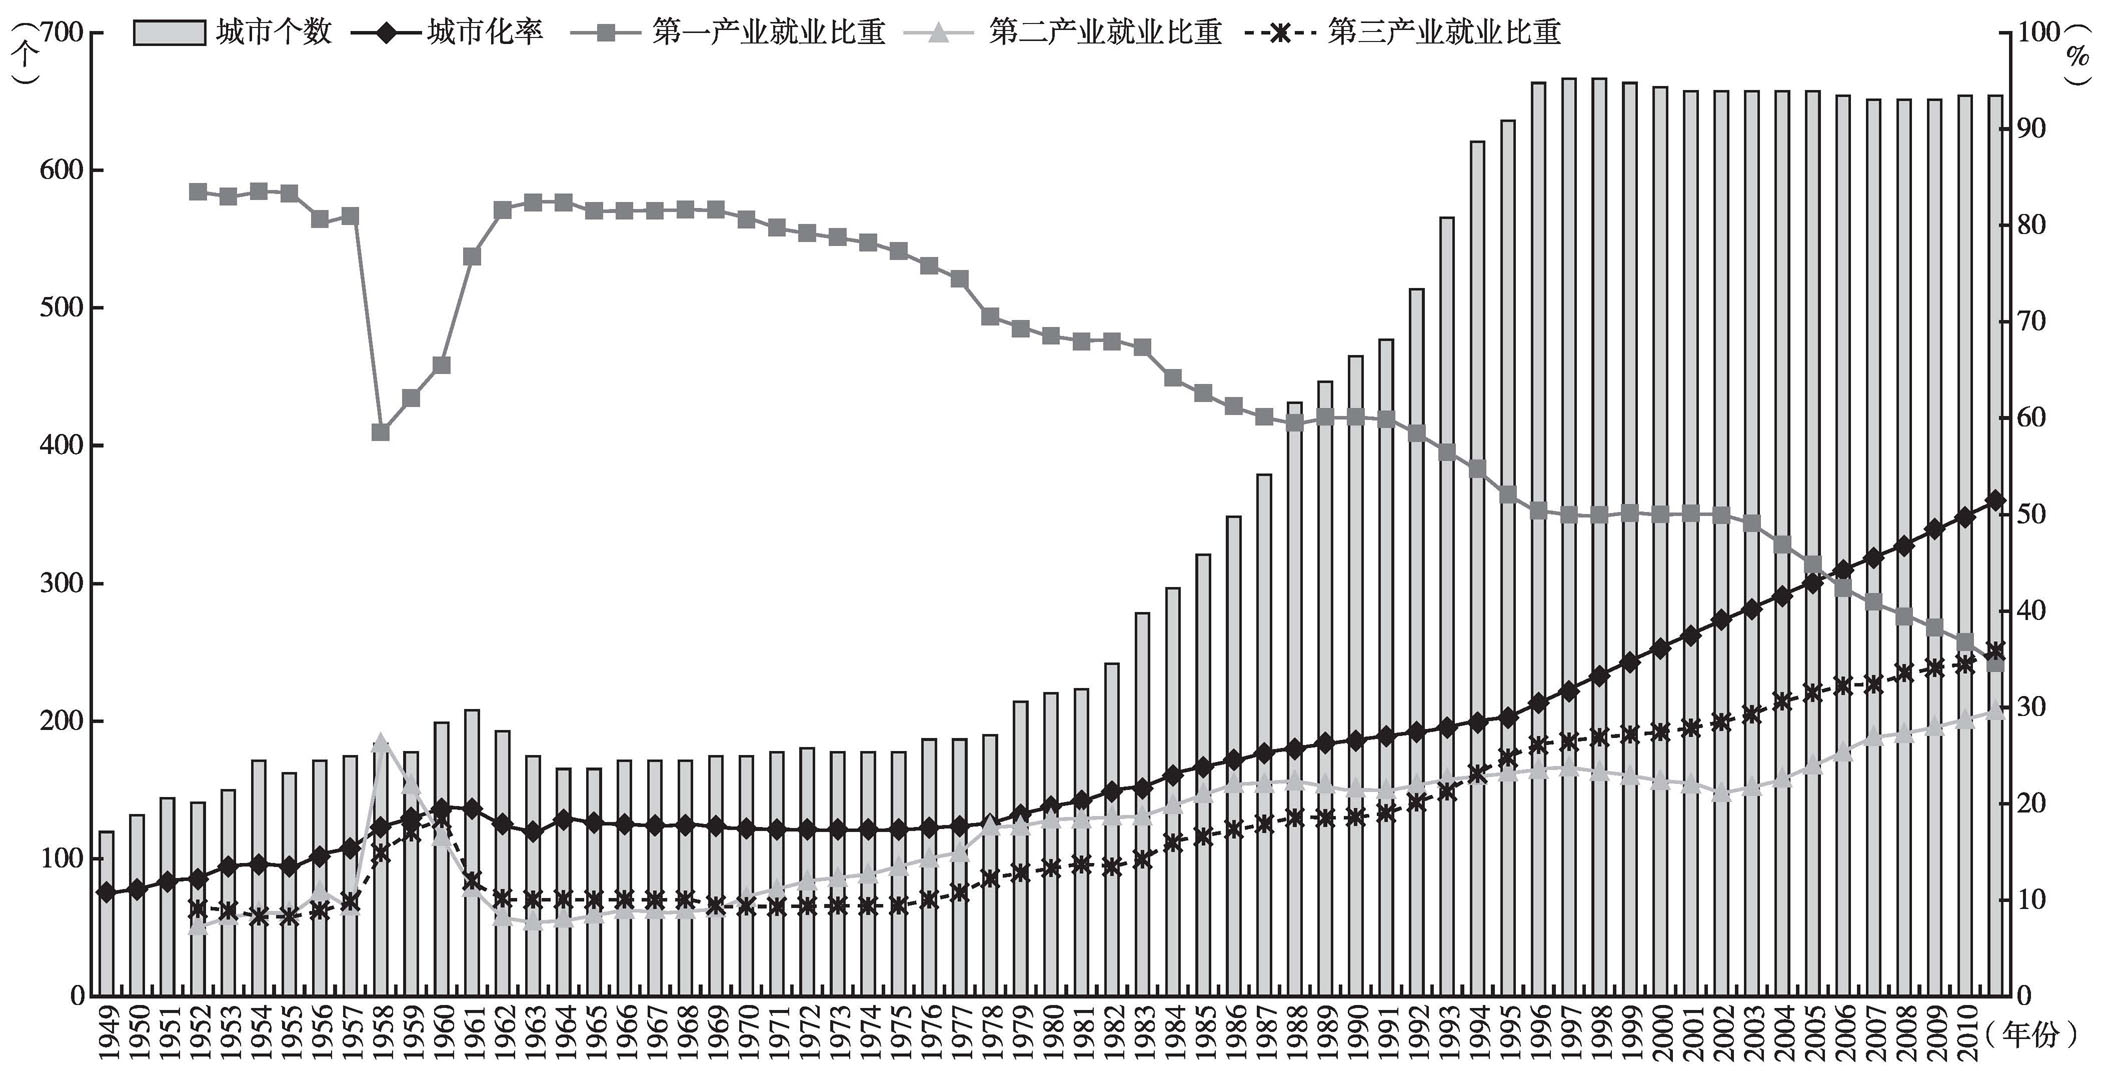 中国人口数量变化图_中国城市人口历年数量